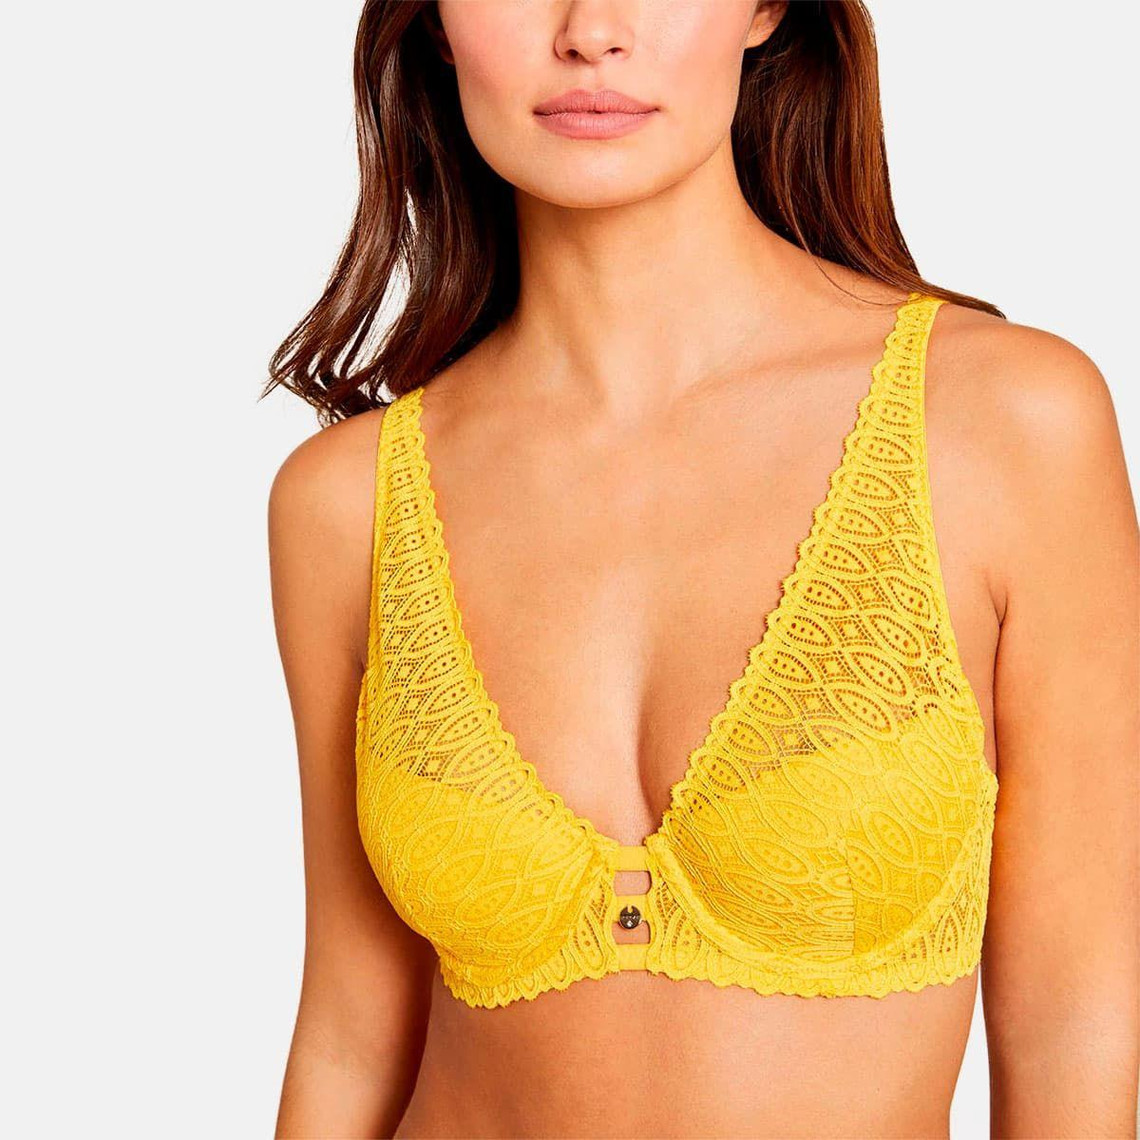 soutien-gorge foulard armatures - jaune morgan lingerie jeanne